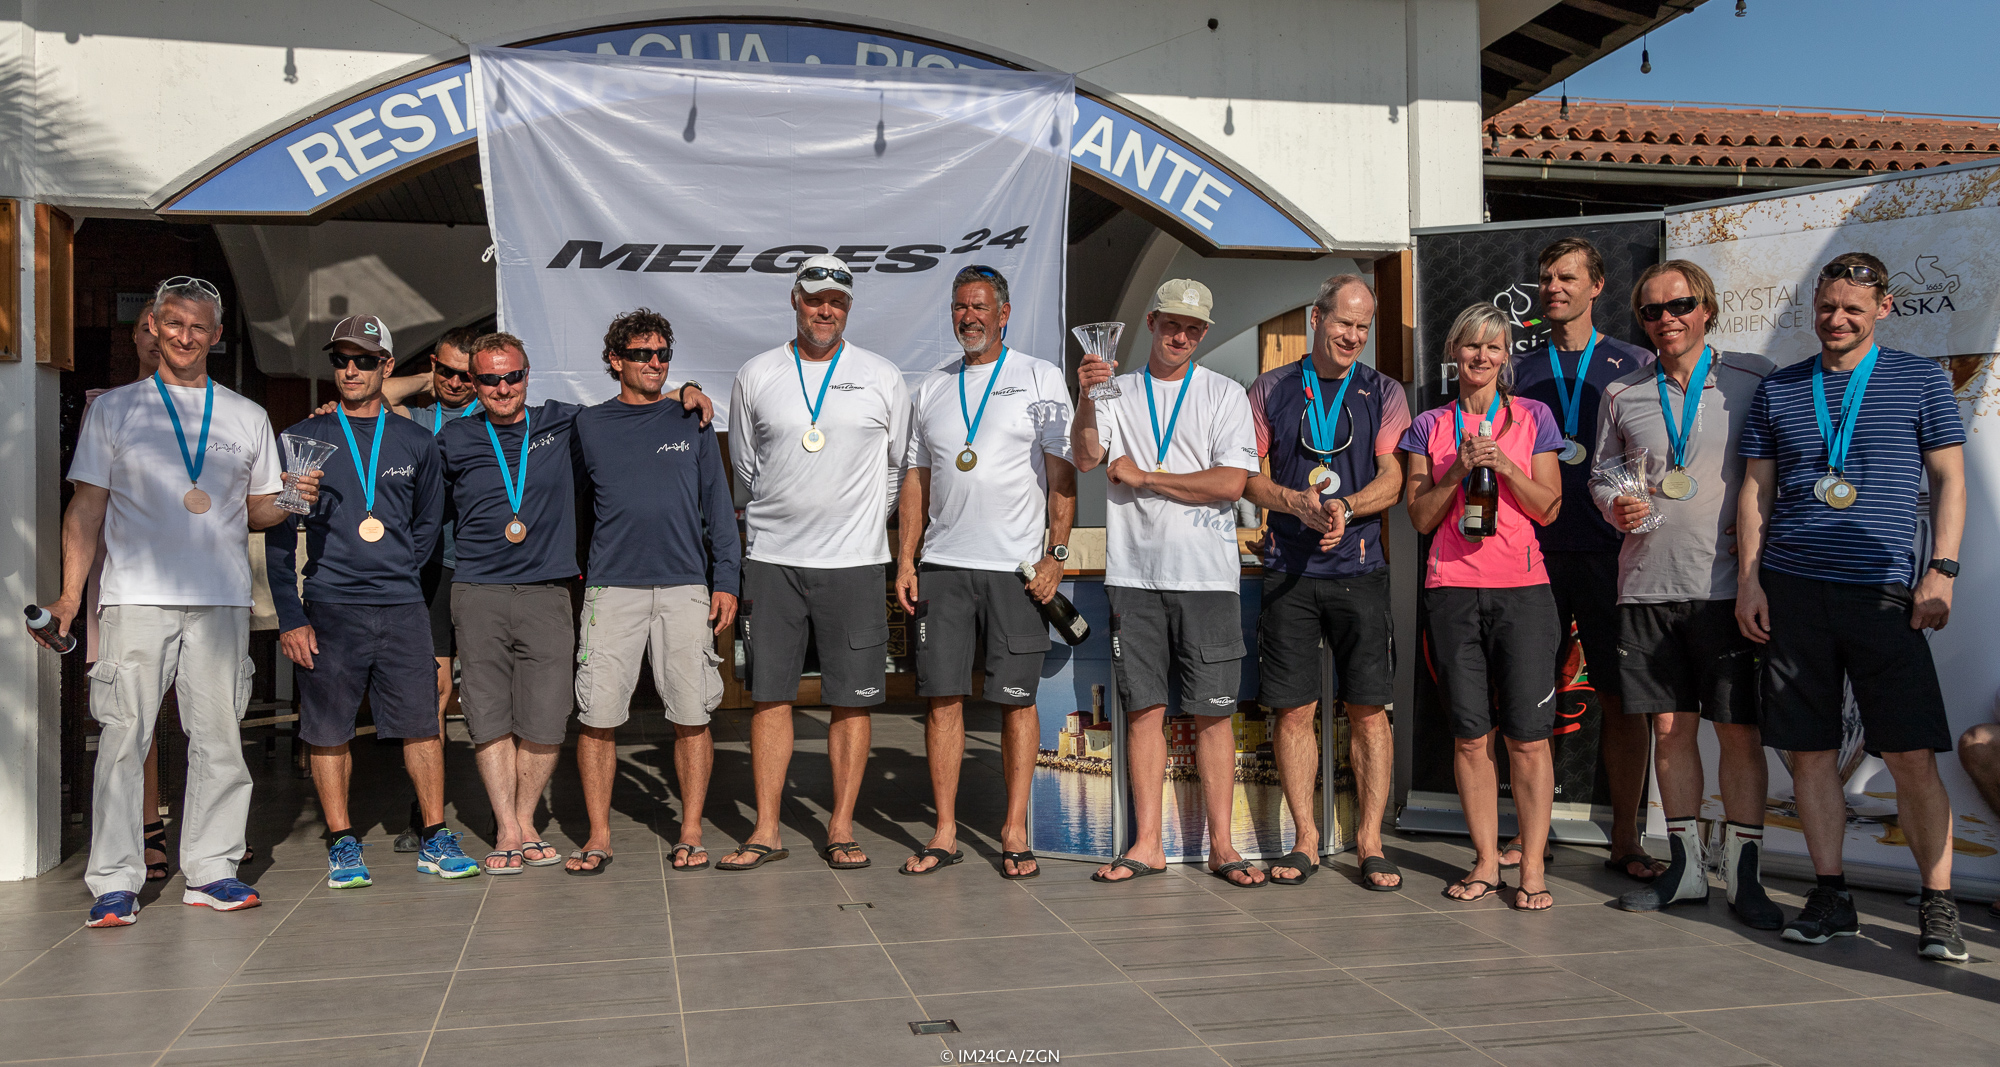 The overall Top 3 of the Marina Portoroz 2018 regatta